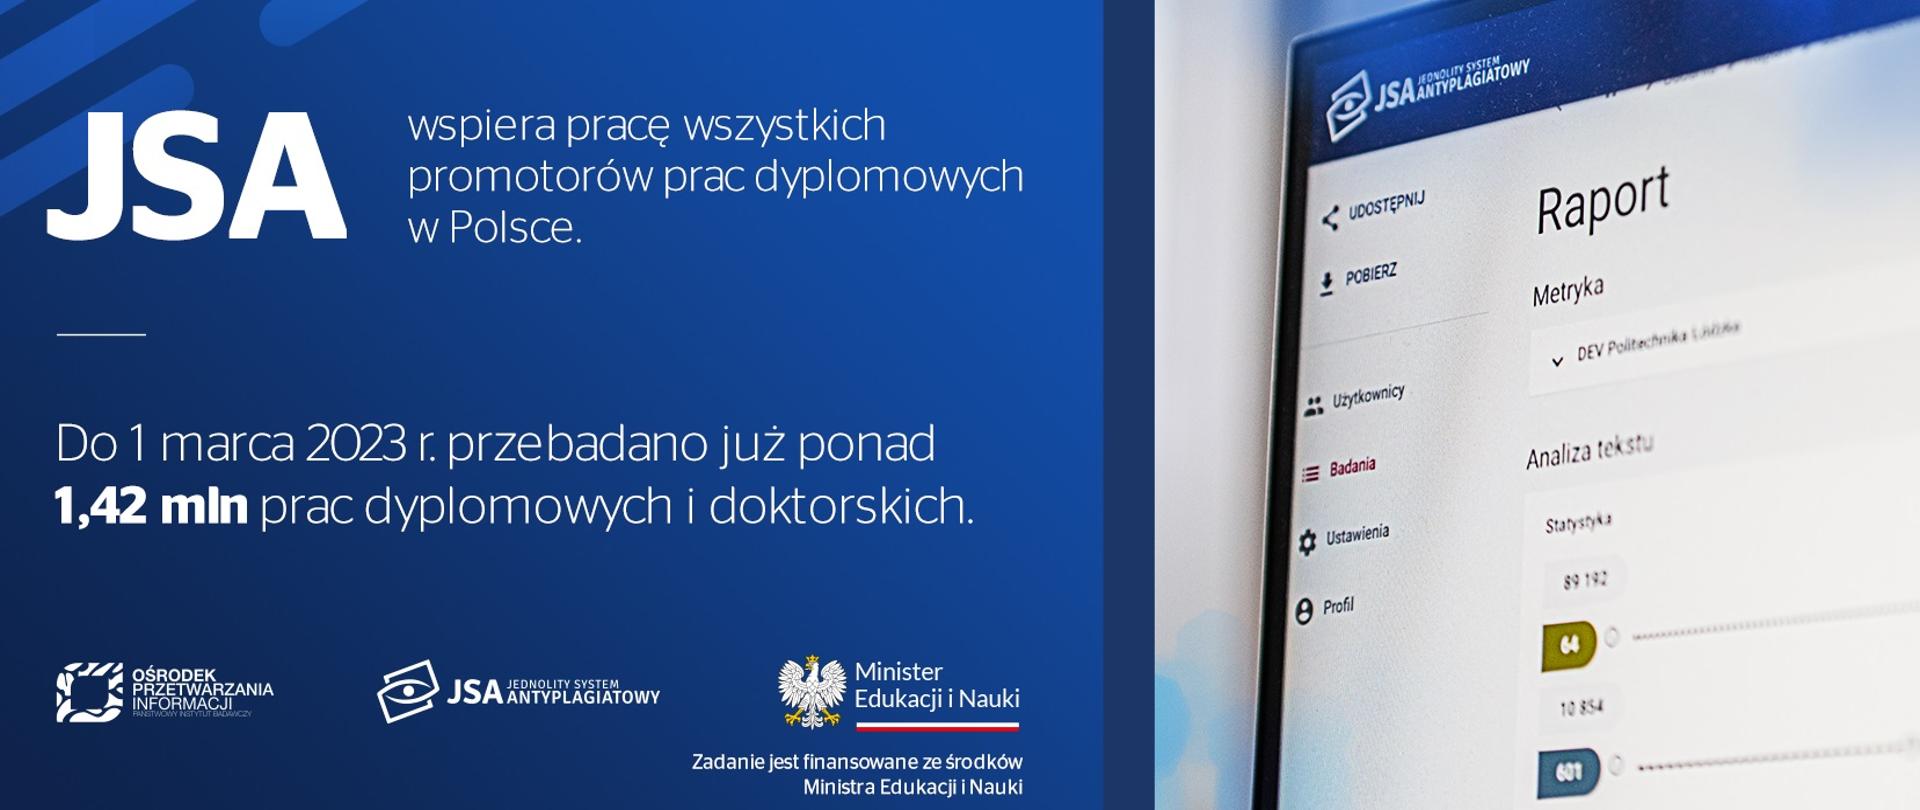 Grafika - ekran komputera z napisem Raport, obok napis na niebieskim tle JSA wspiera pracę wszystkich promotorów prac dyplomowych w Polsce.